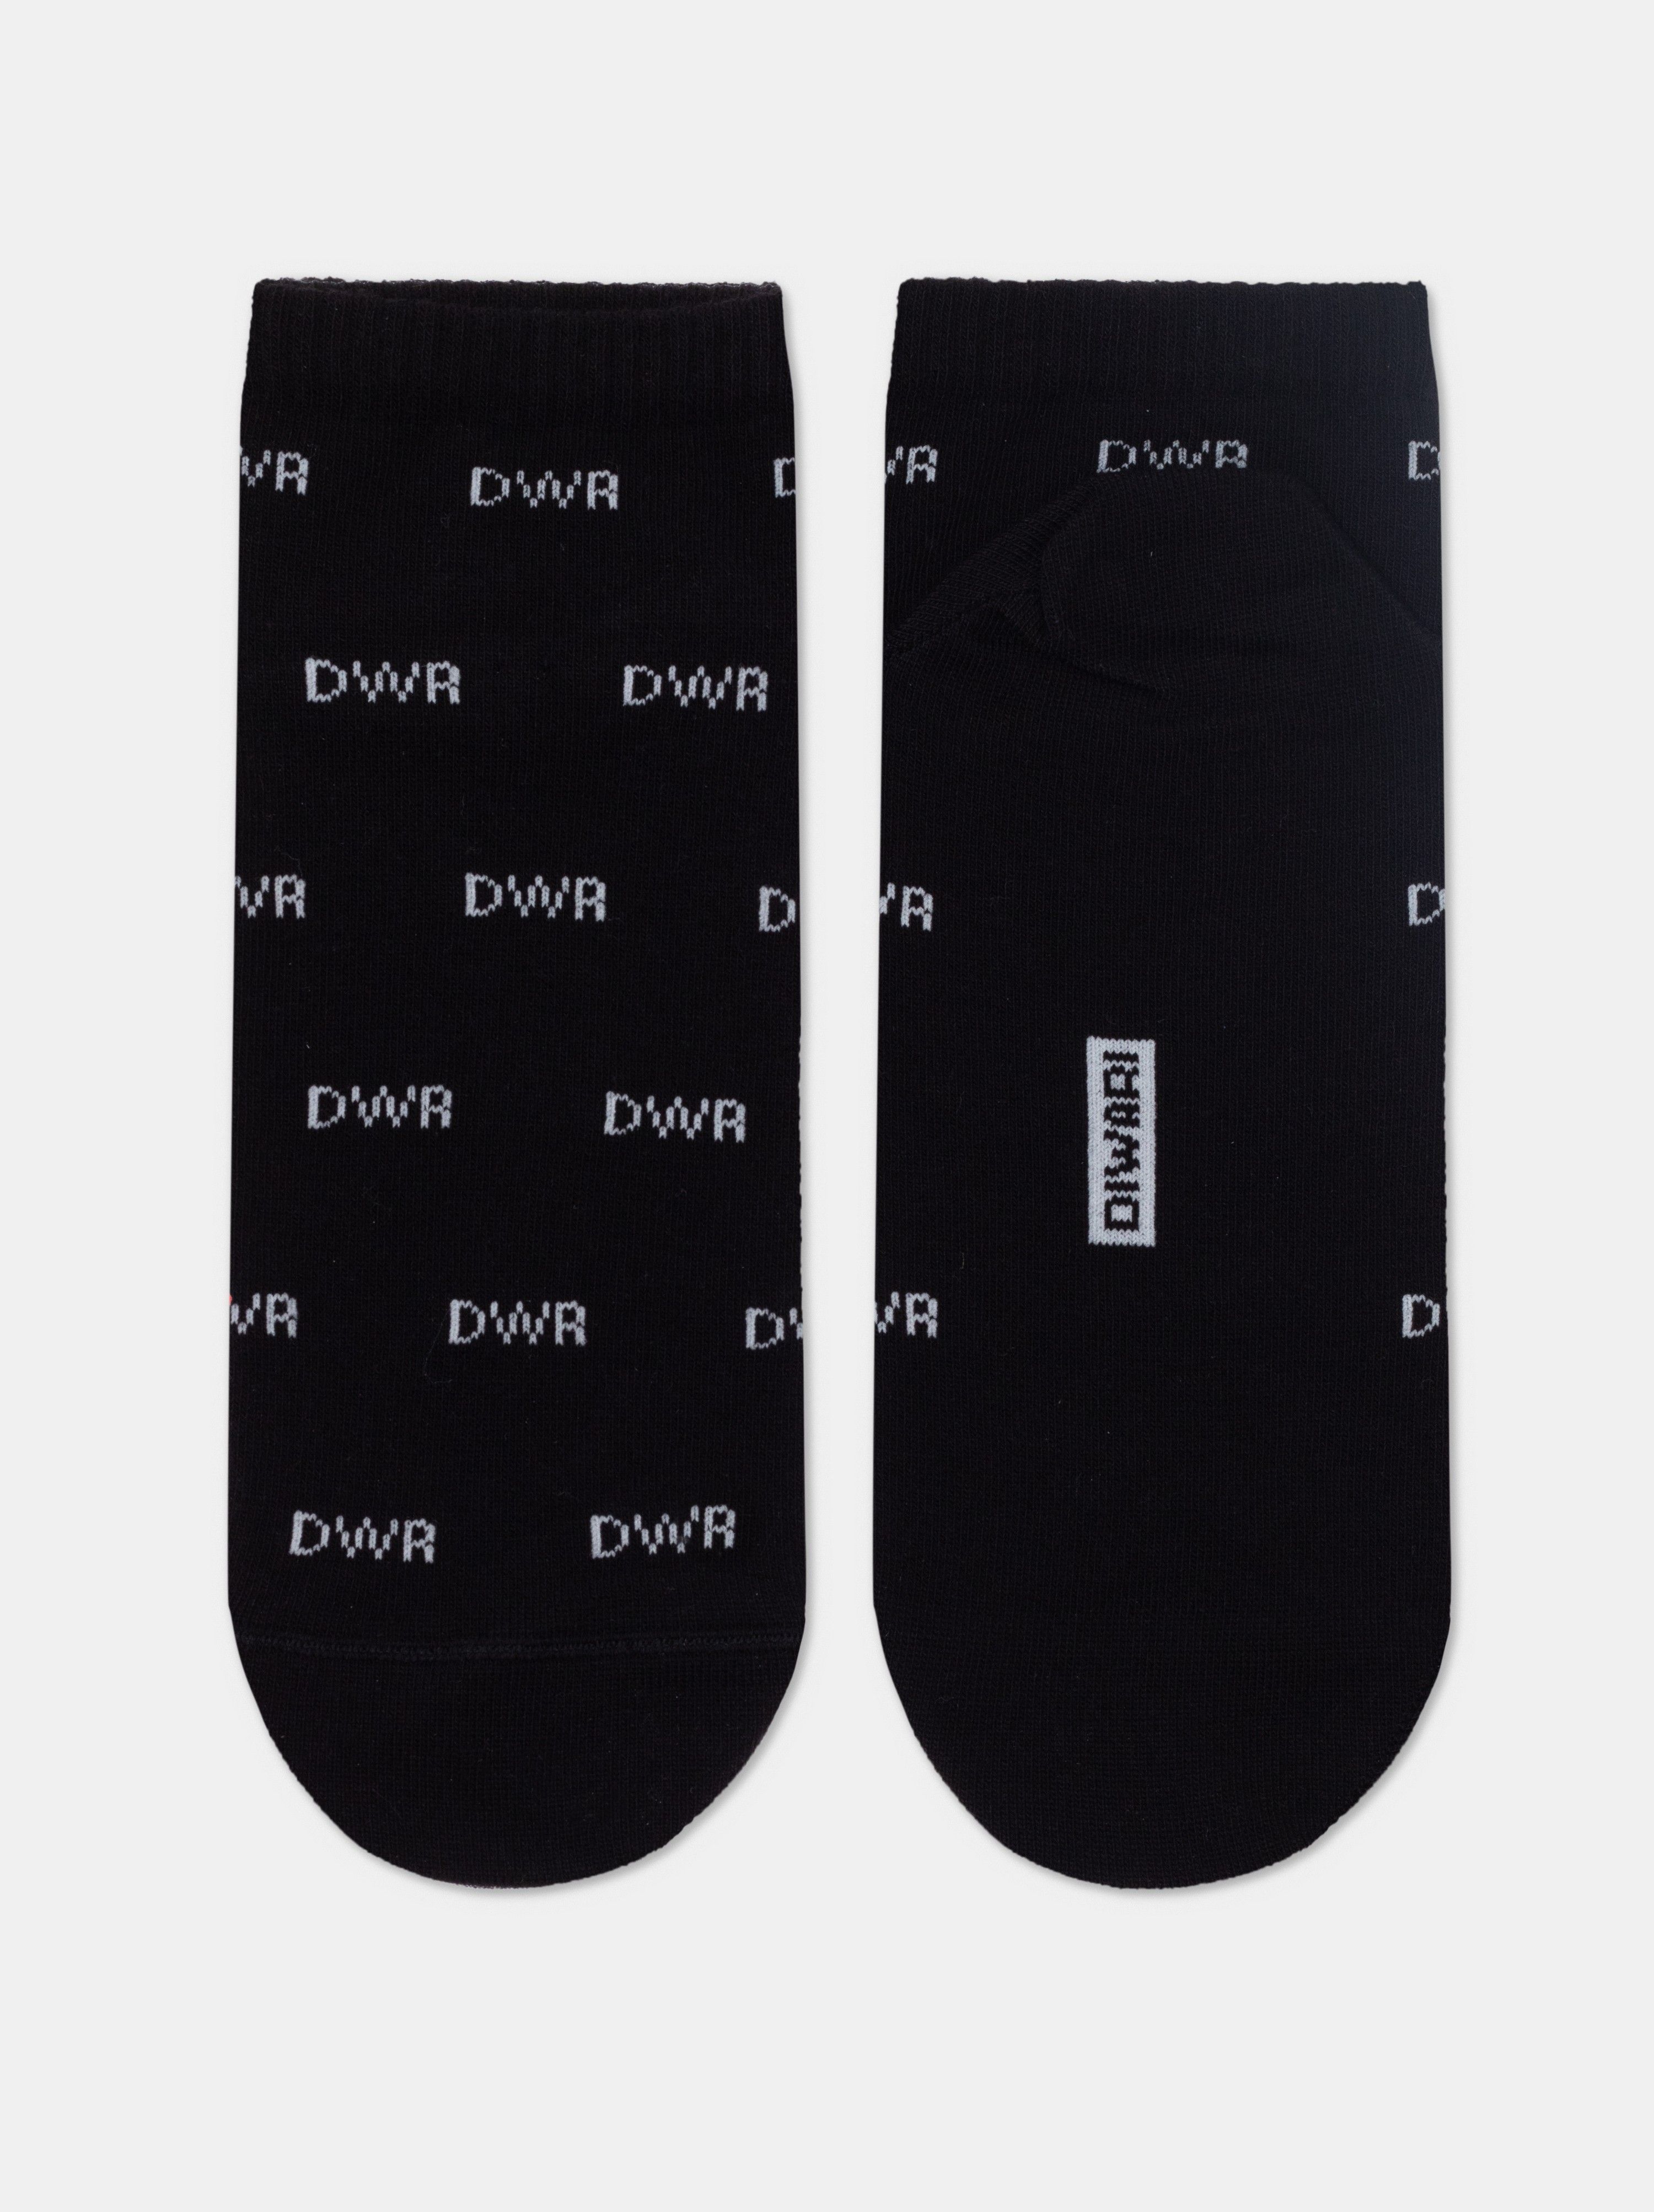 Короткие носки из хлопка с отсылкой к логотипу бренда Conte ⭐️, цвет черный, размер 40-41